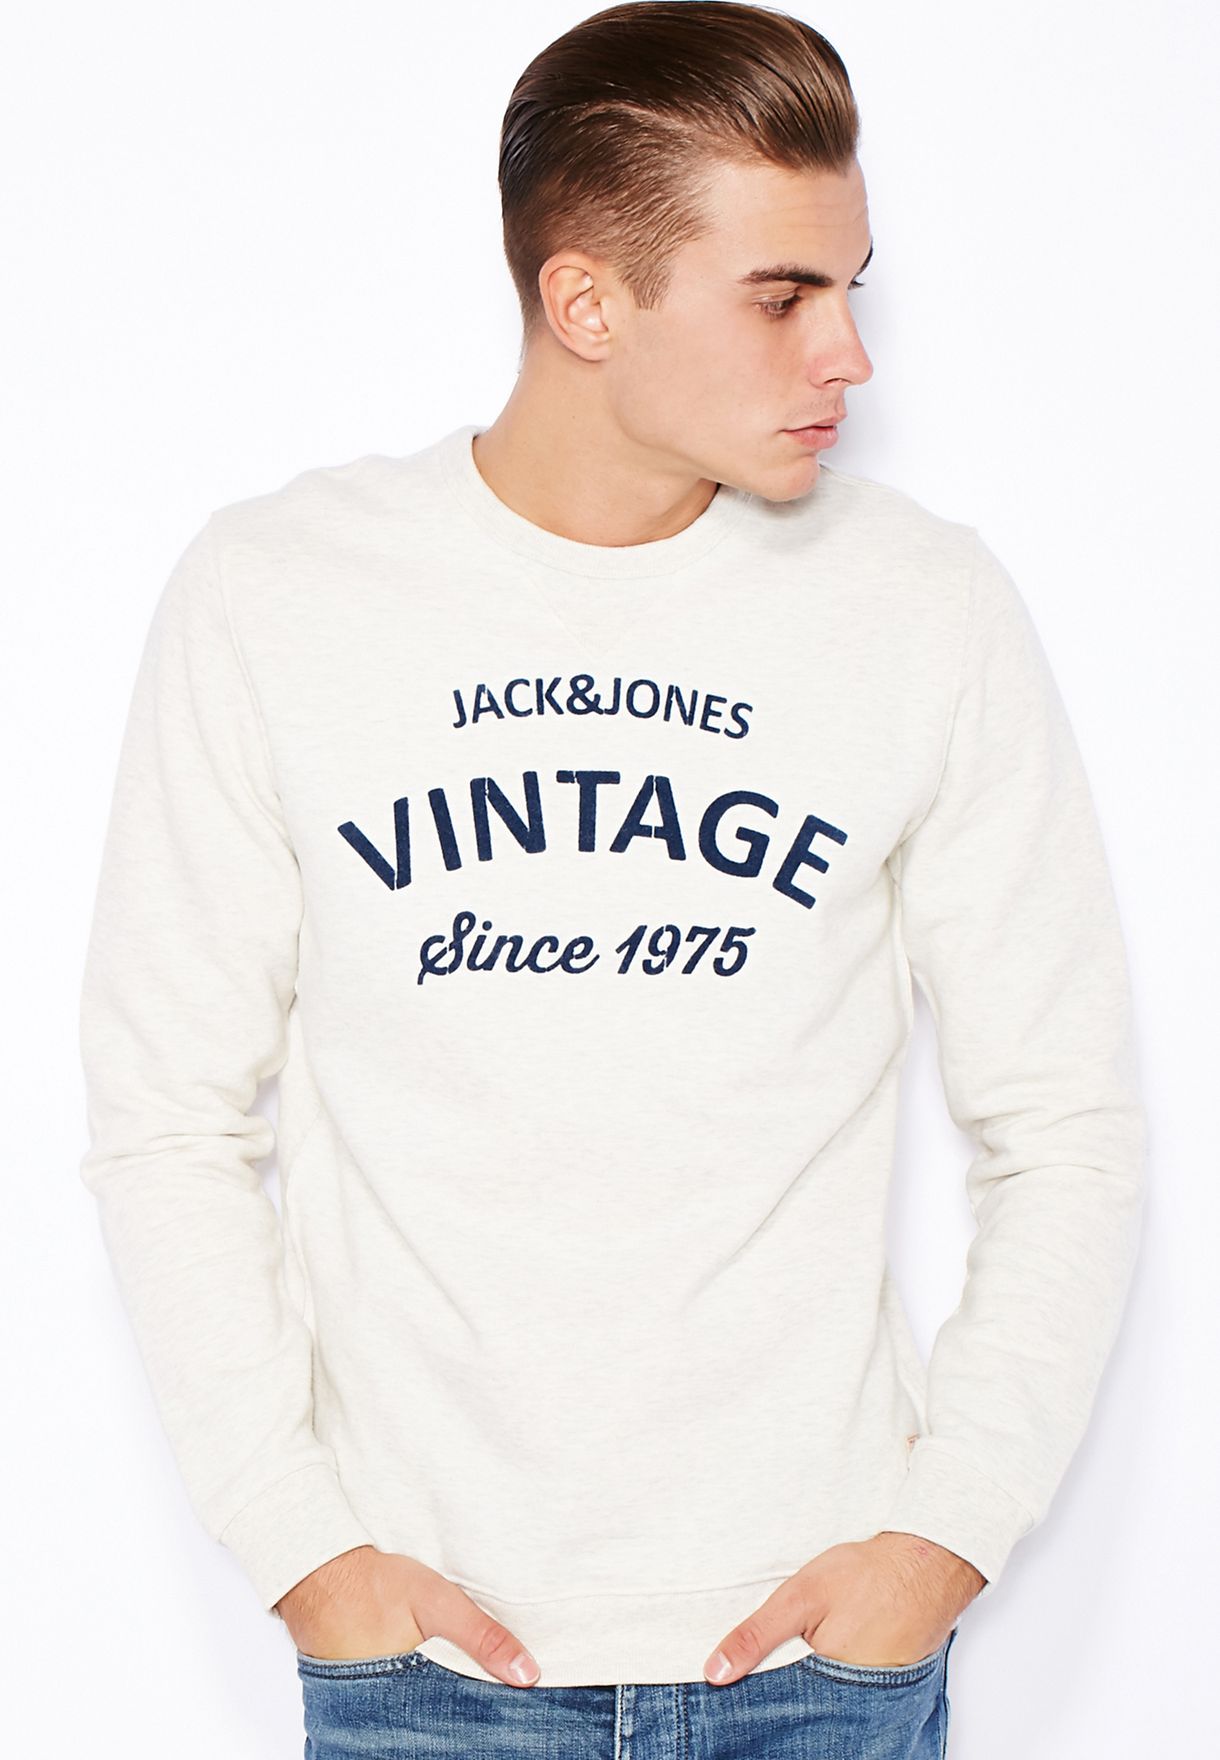 Verloren dichtheid Imitatie Buy Jack Jones white Vintage Sweatshirt for Men in MENA, Worldwide